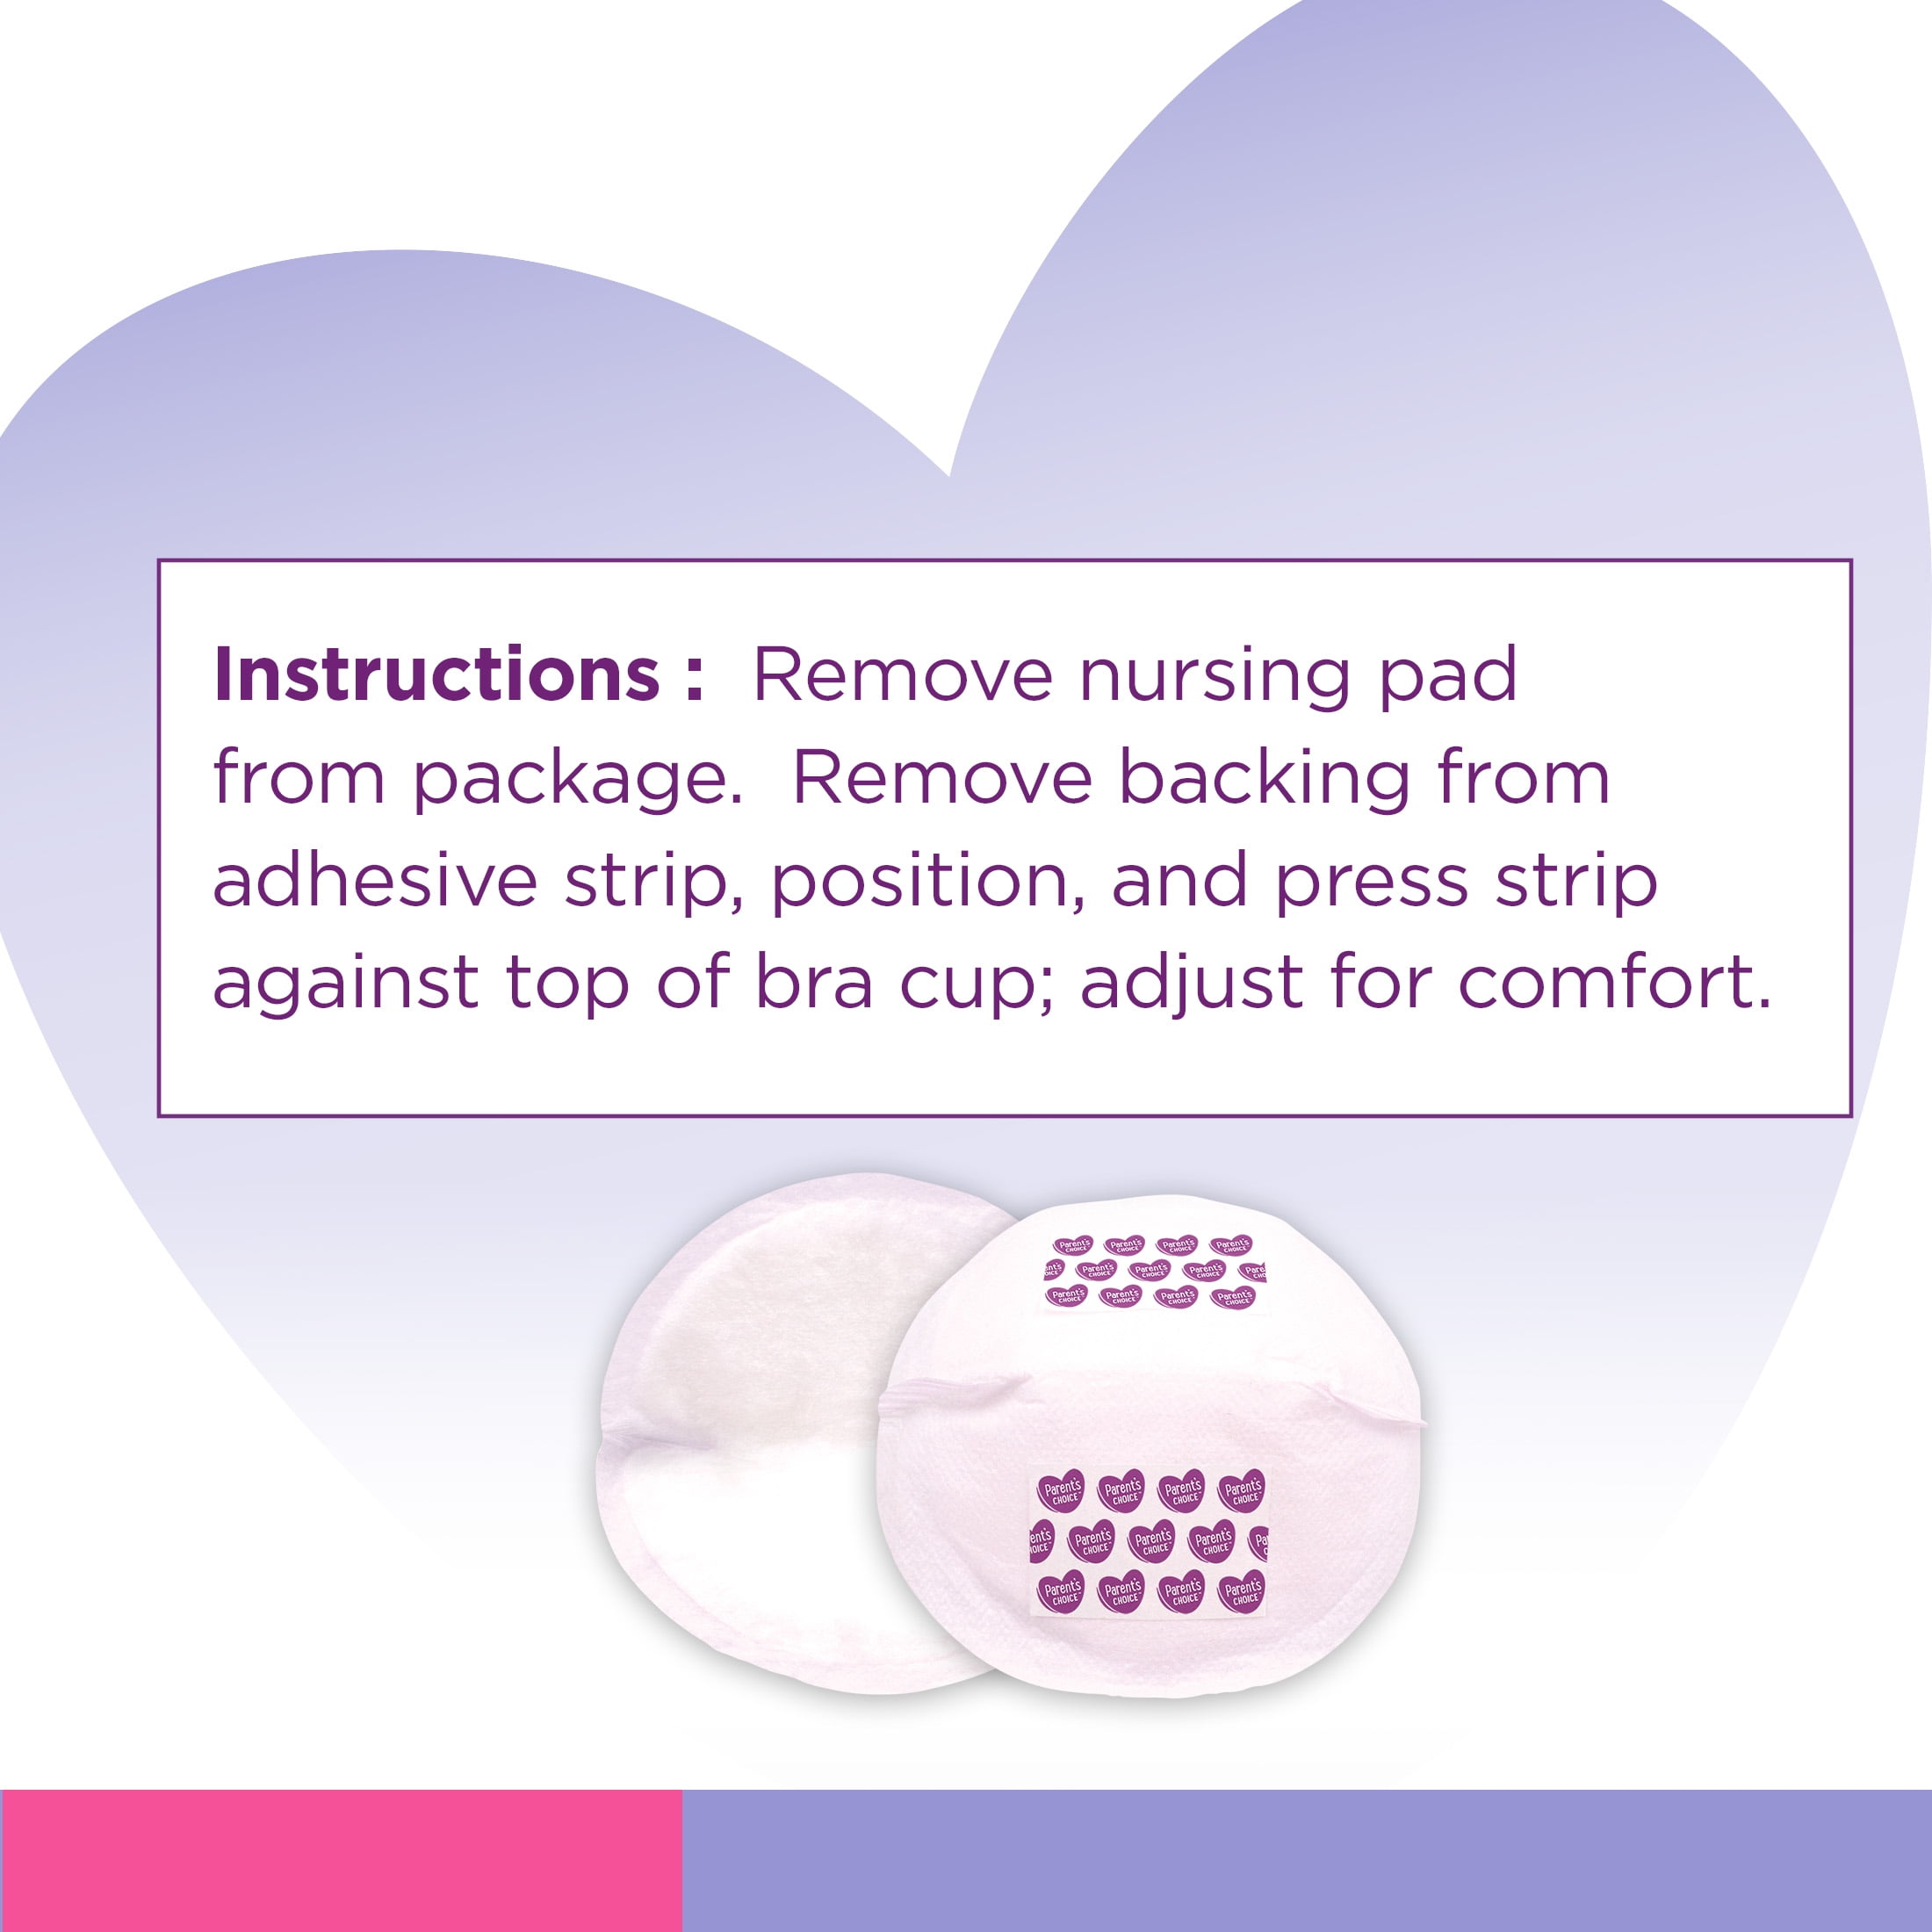 Parents Choice Premium Nursing Pads, 42 Count